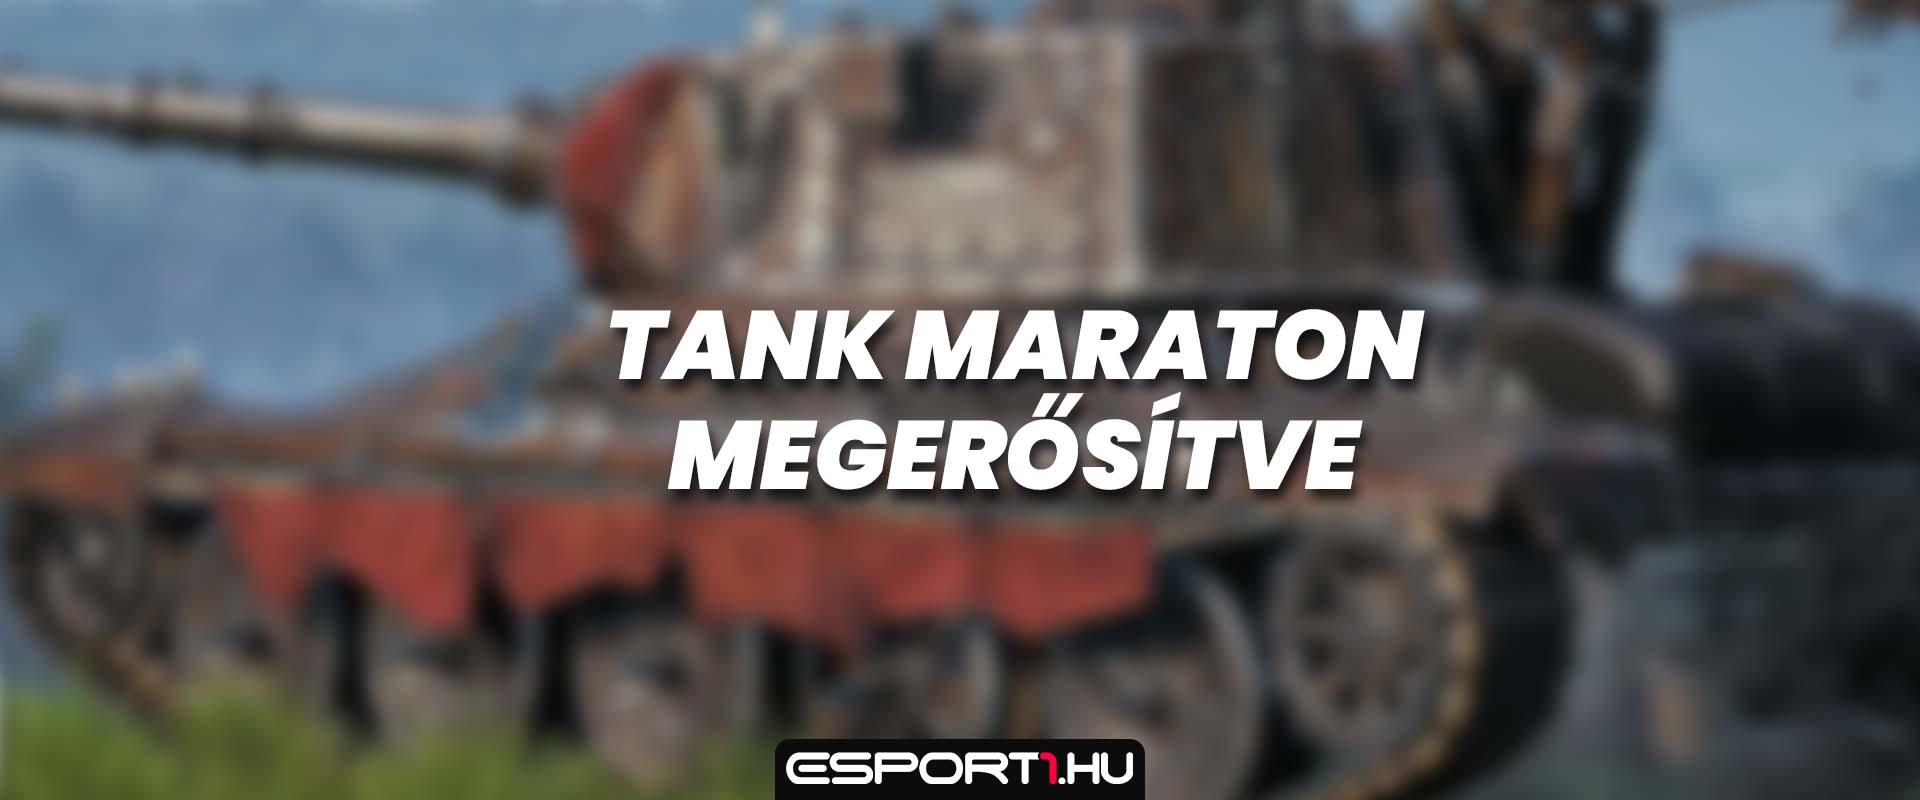 Hivatalosan megerősítve: pénteken tank maraton kezdődik